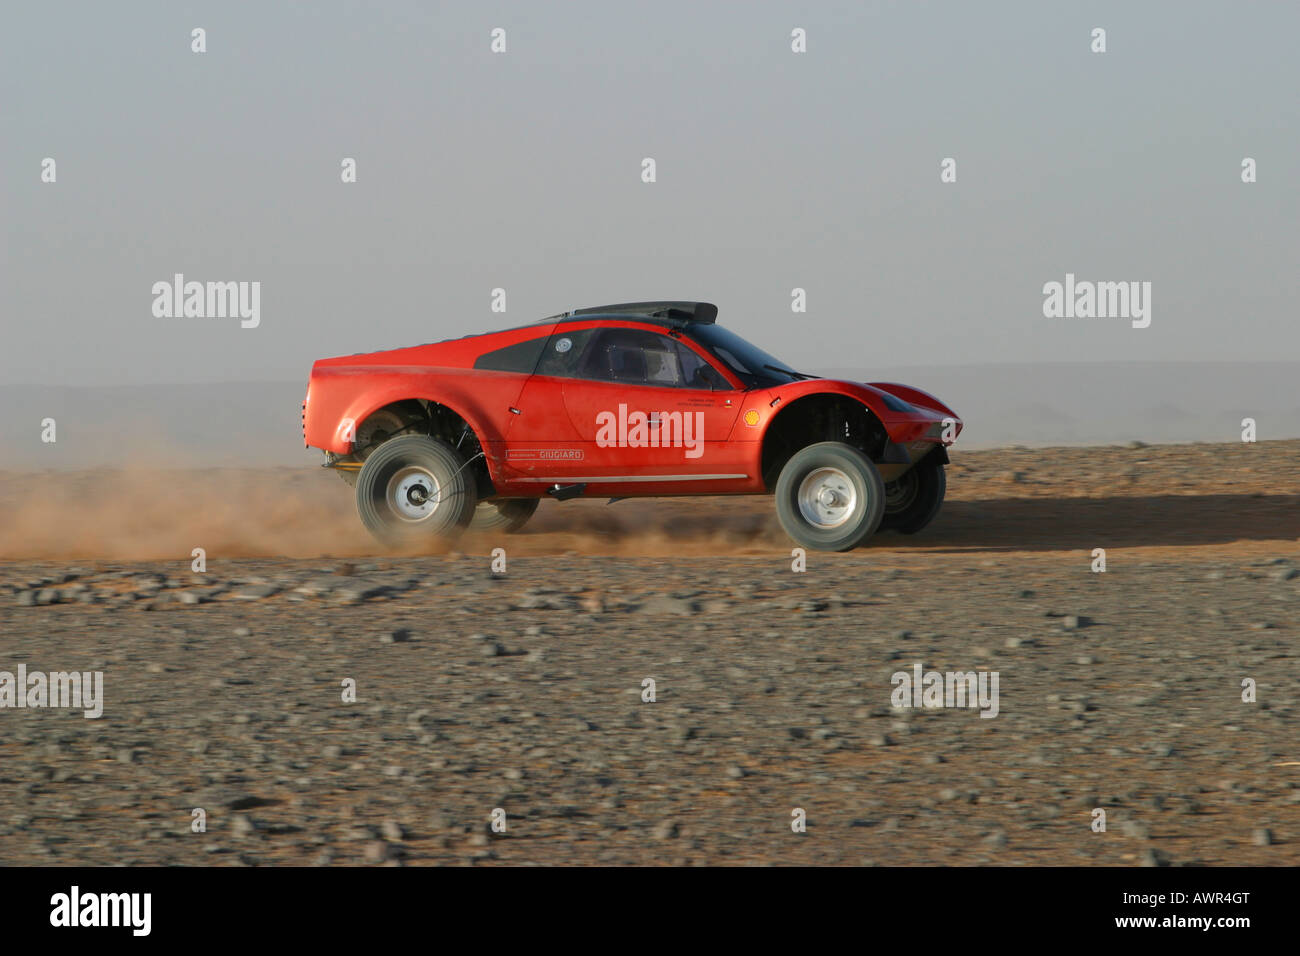 Paris-Dakar Tarek véhicule, prototype de test au Maroc, VW, Jutta Kleinschmidt pilote, co-pilote Fabrizia Pons, le Maroc, l'Afrique Banque D'Images